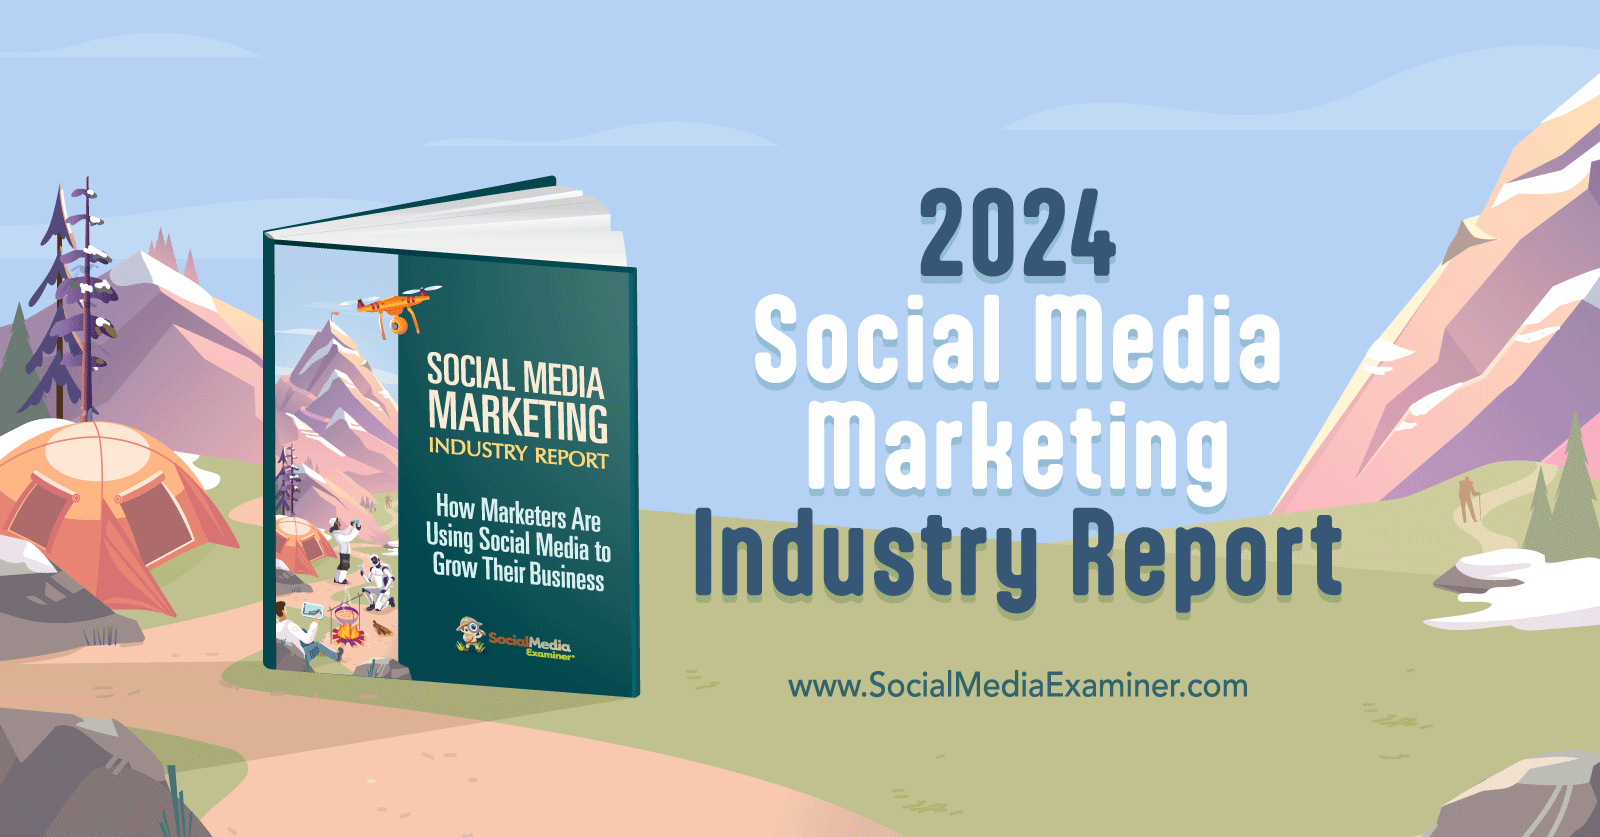 social-media-marketing-industry-report-2024-social-media-examiner